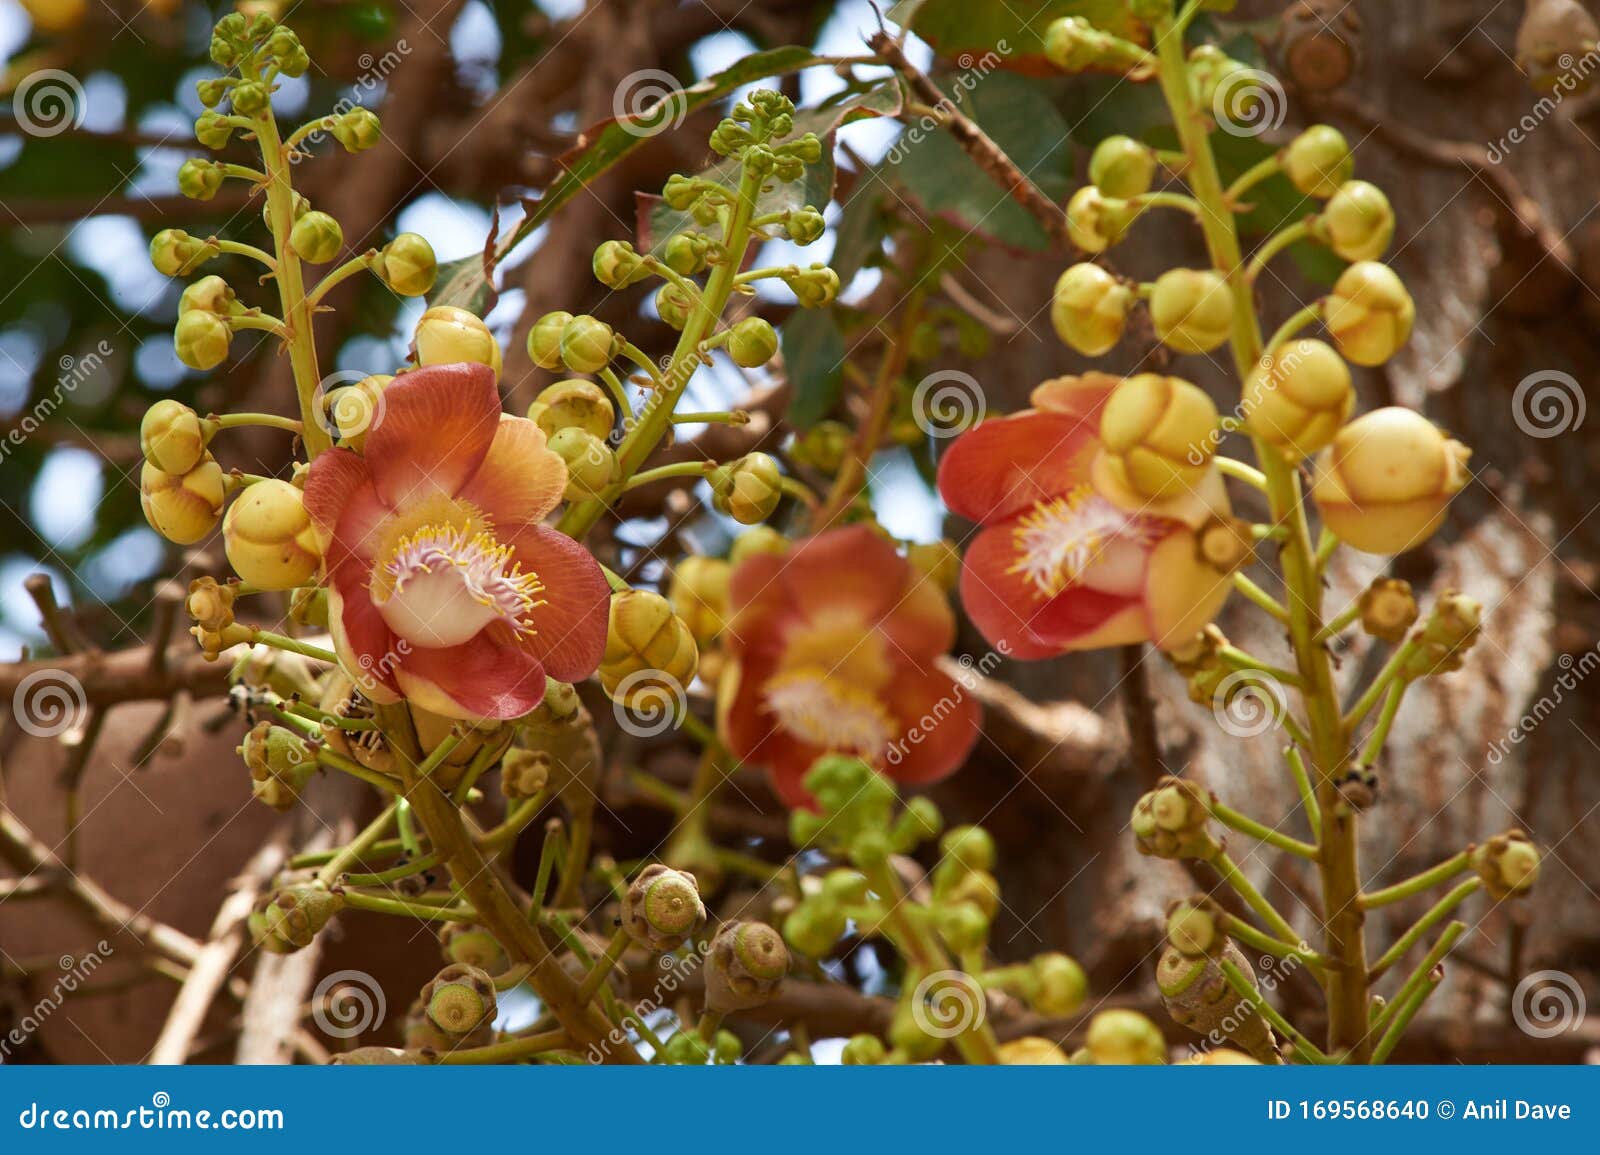 ÃÂÃÂ¡annon ball tree. stem, flowers and fruits. bottom view at byculla zoo rani bagh.mumbai